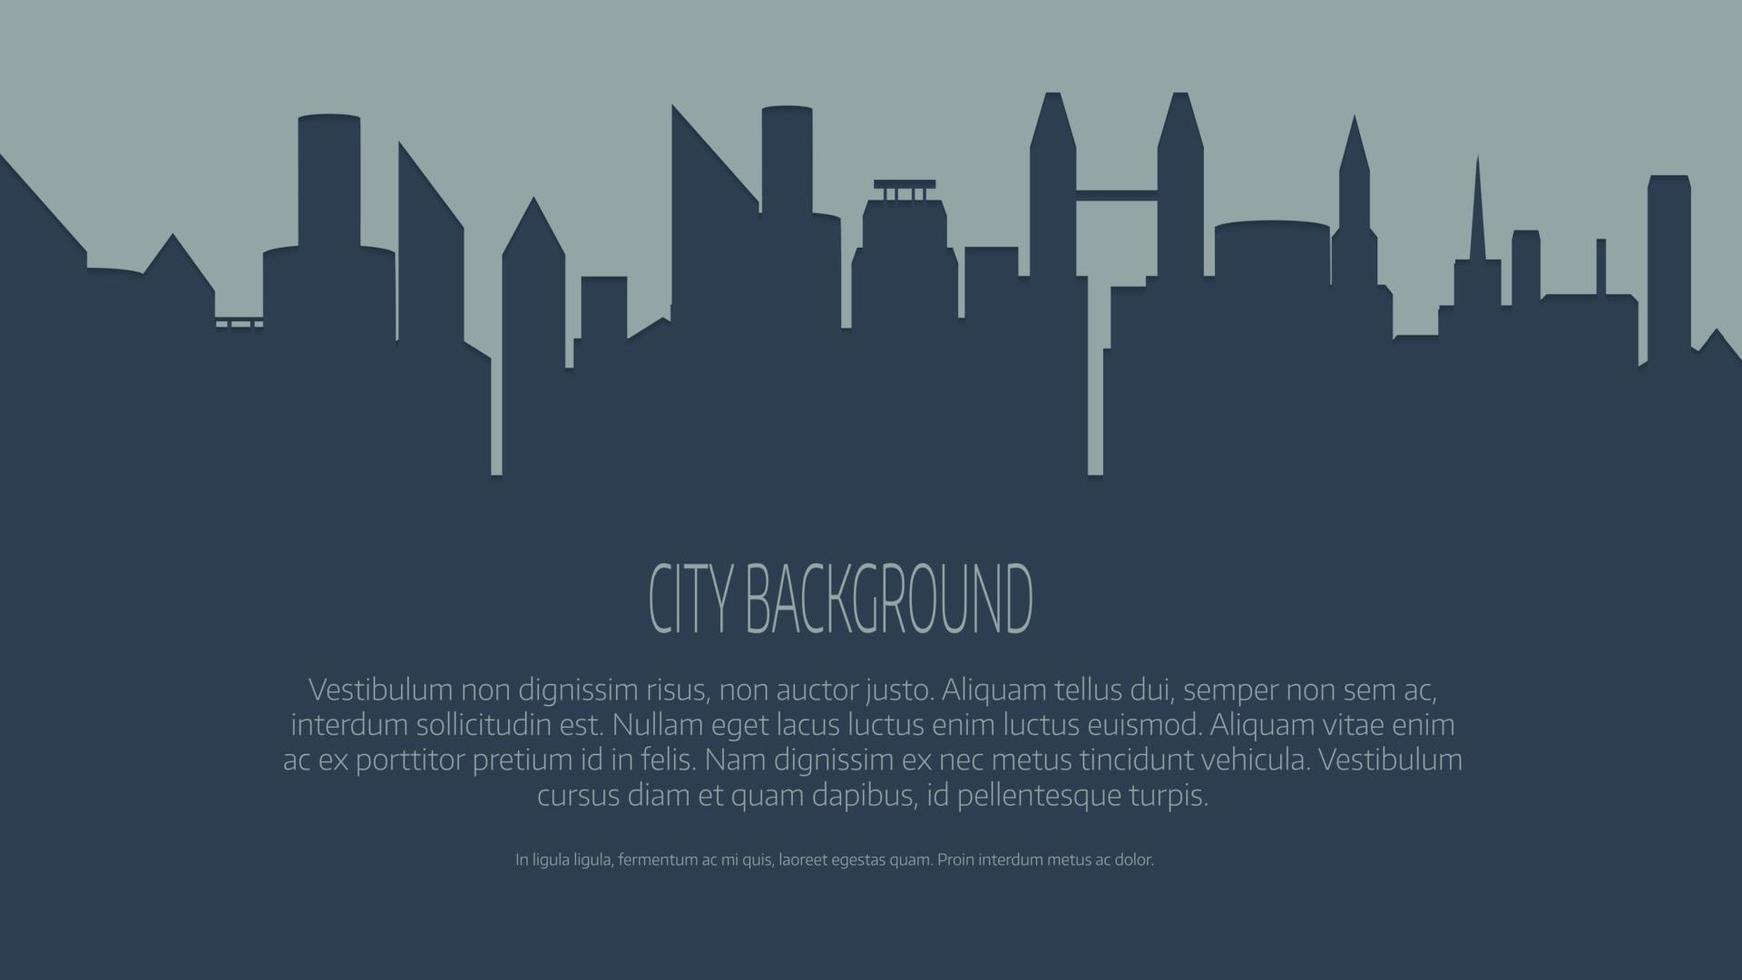 ilustração em vetor skyline da cidade.